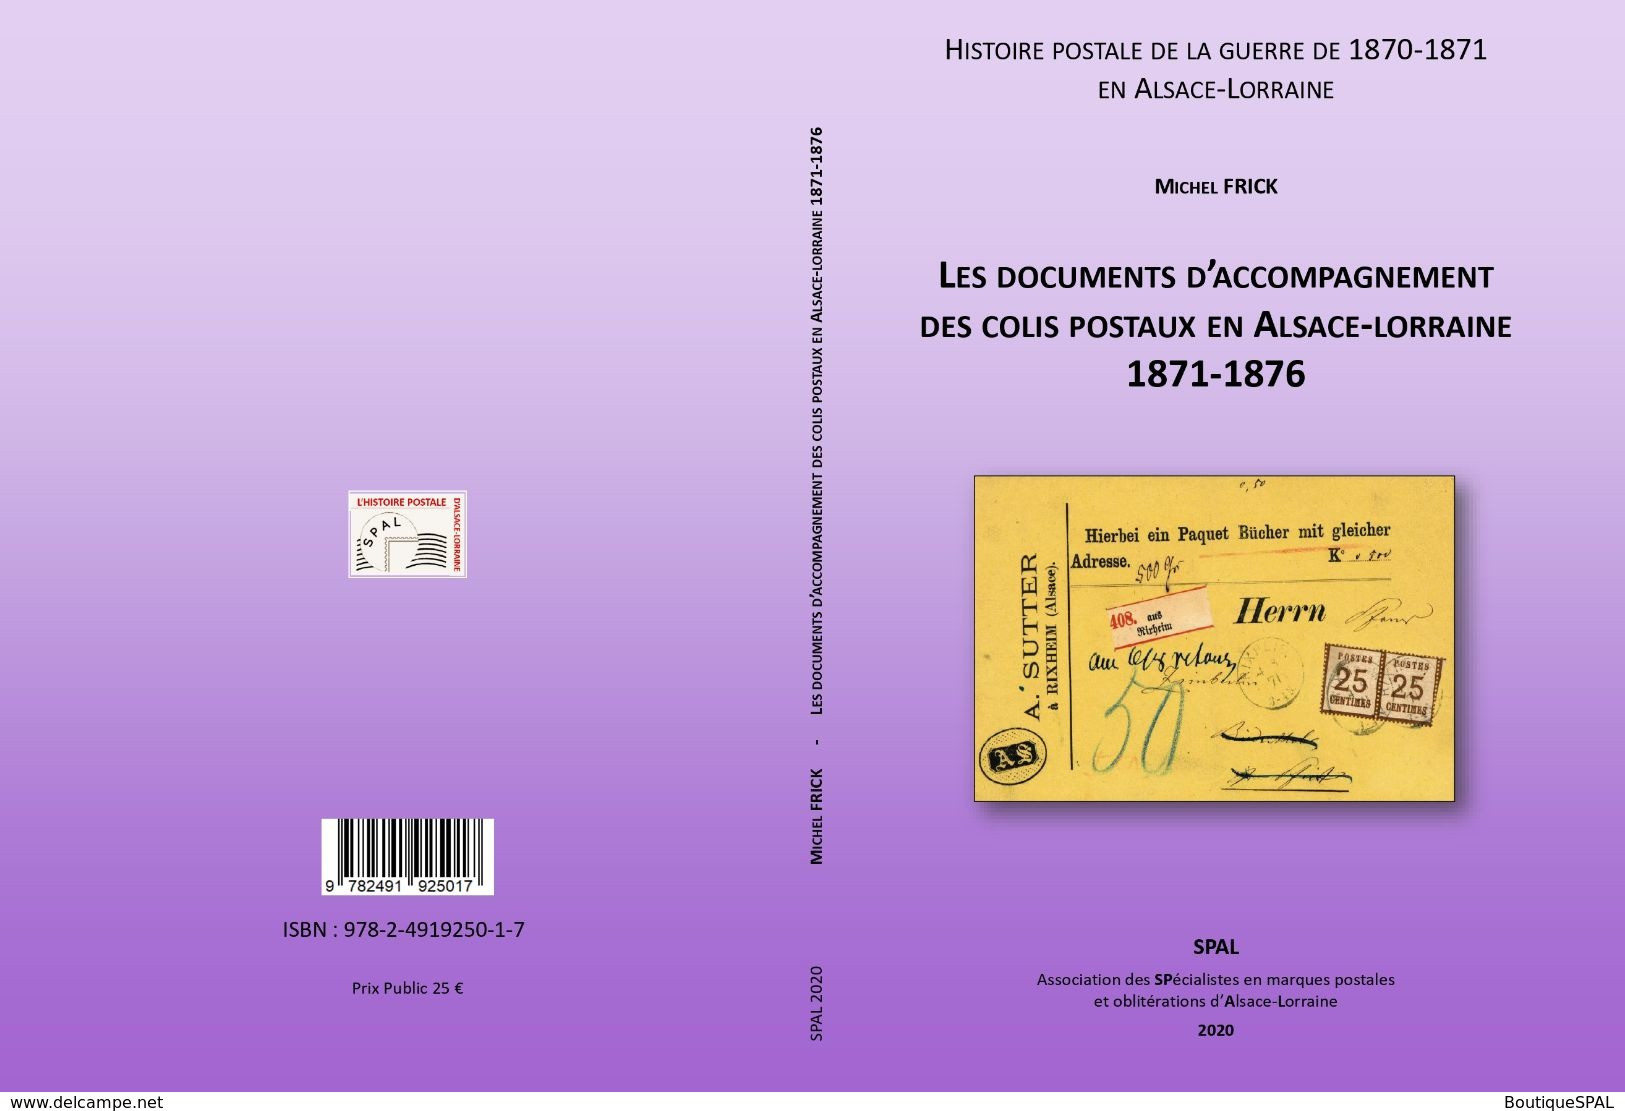 Les Documents D'accompagnement Des Colis Postaux D'Alsace-Lorraine 1871-1876 - Elsass Lothringen - SPAL 2020 - Posta Militare E Storia Militare